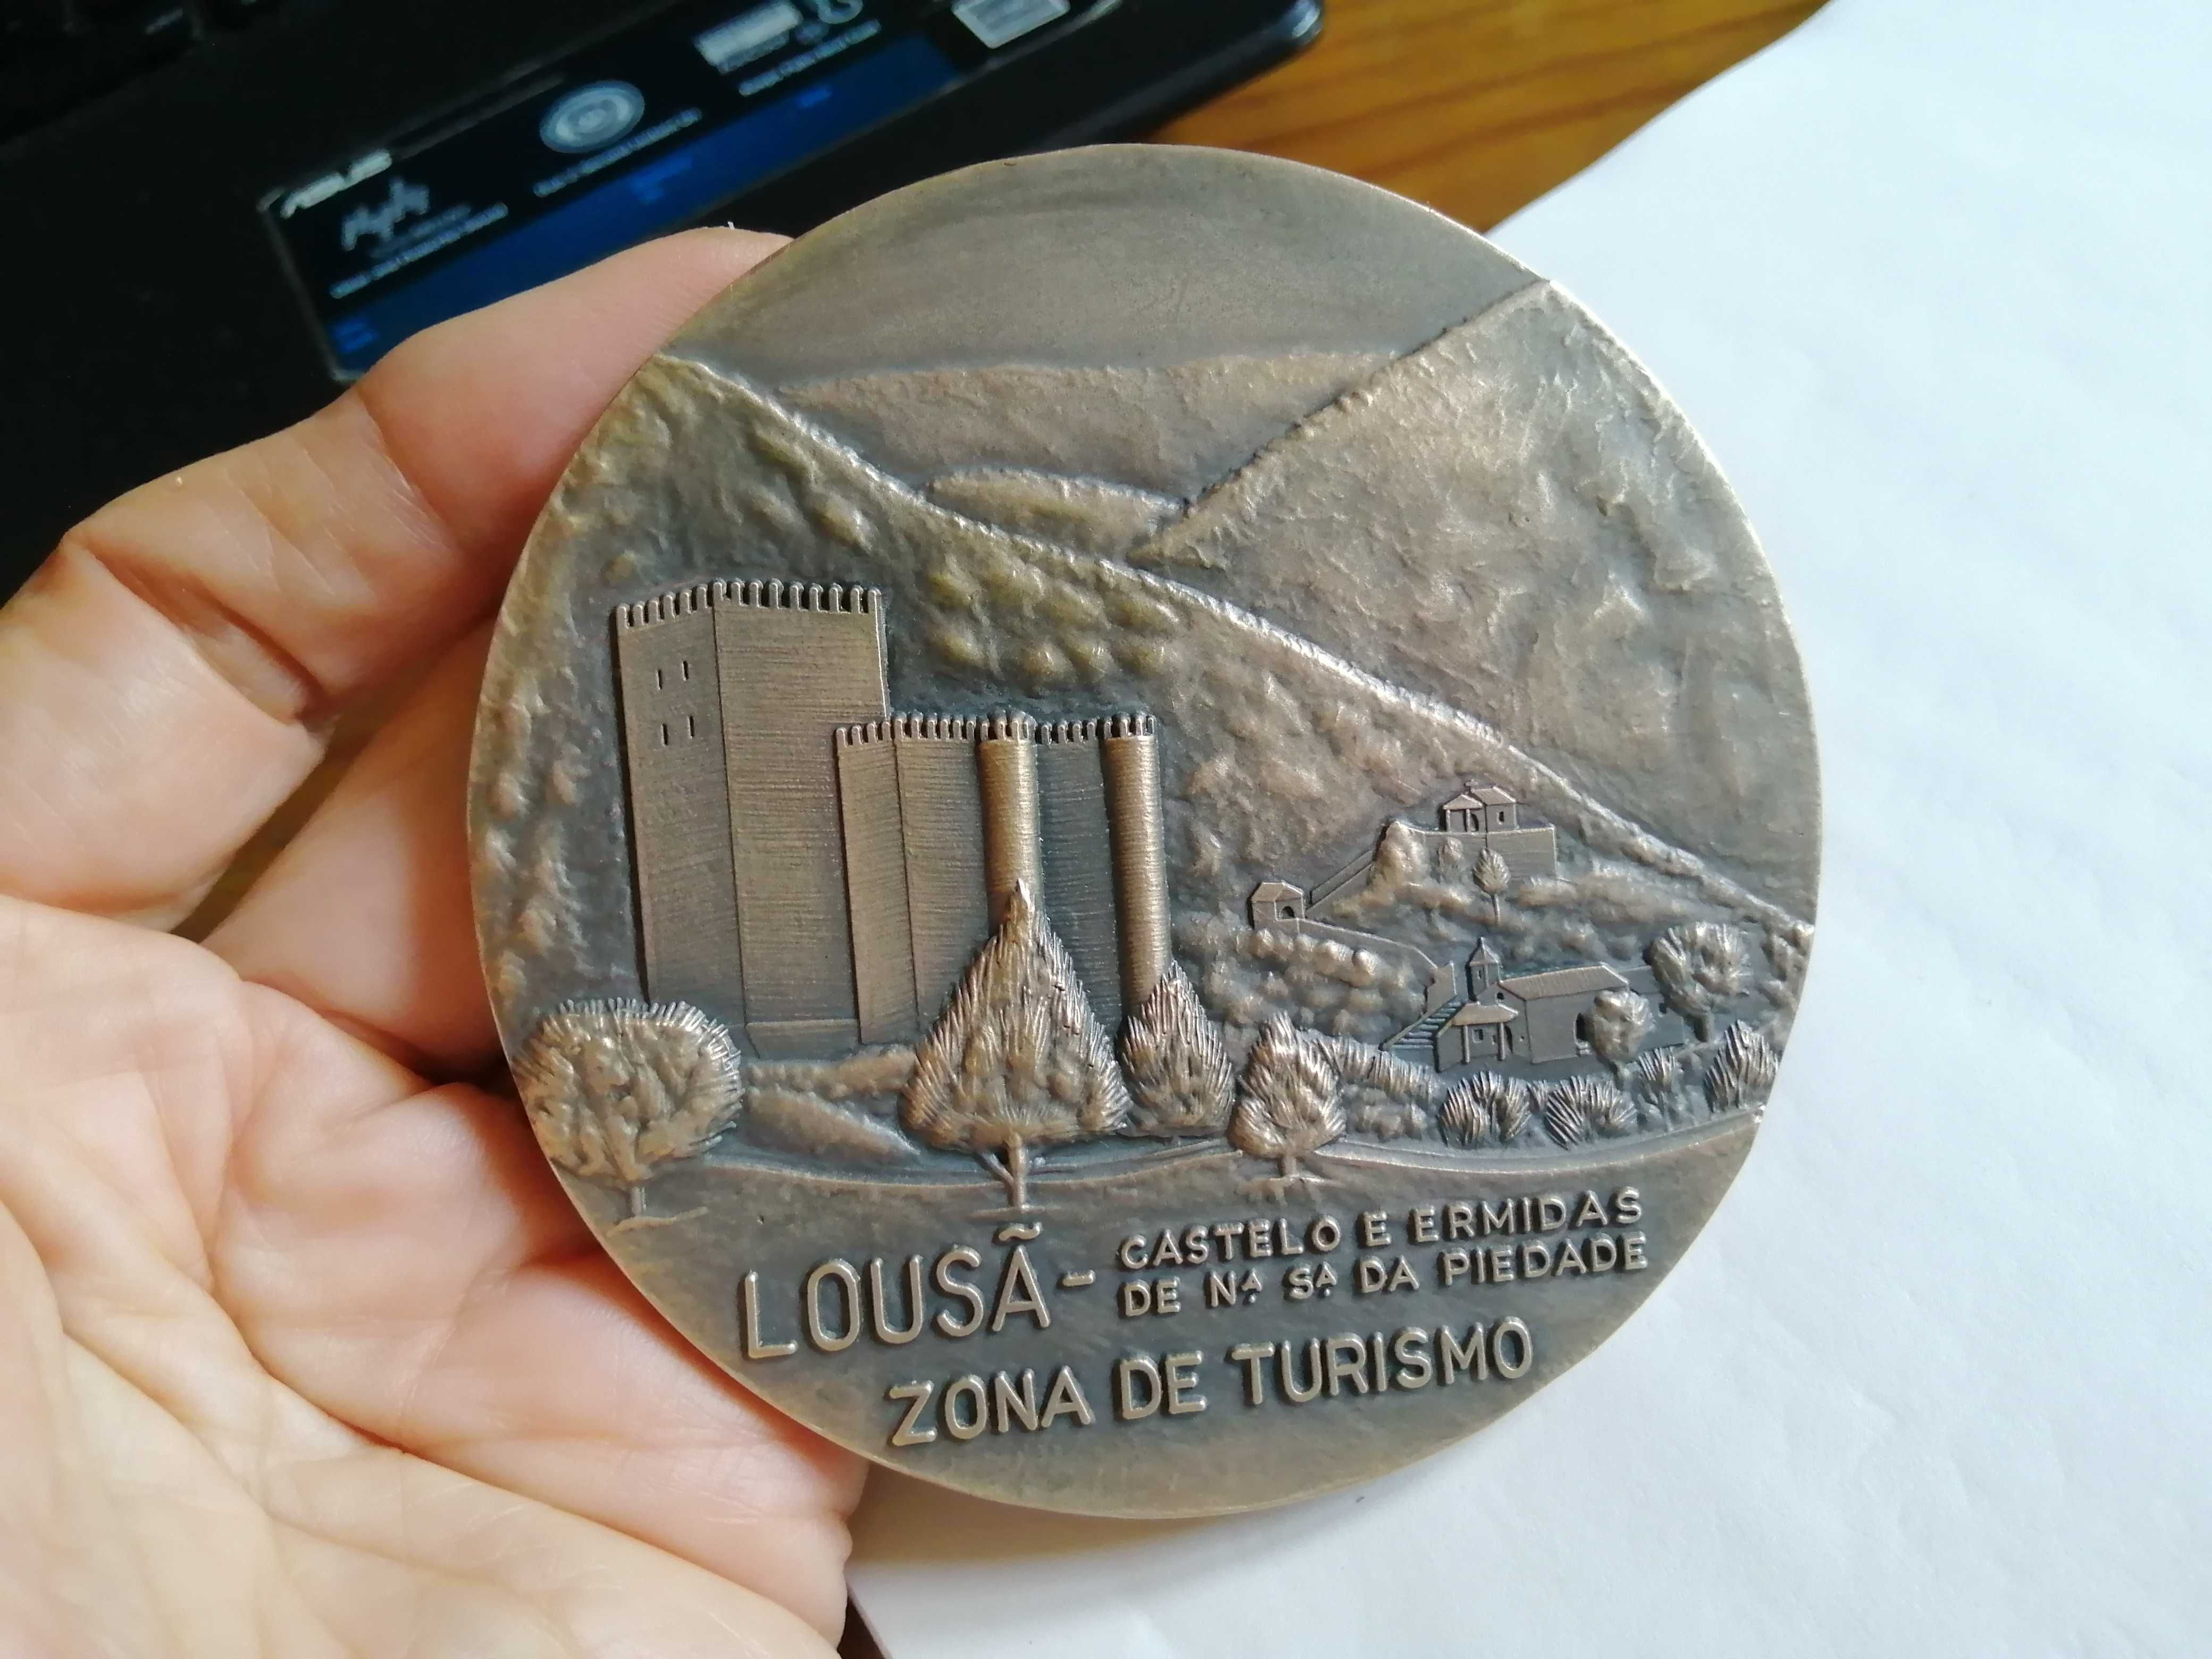 Lousã - medalha comemorativa em bronze (edição numerada)